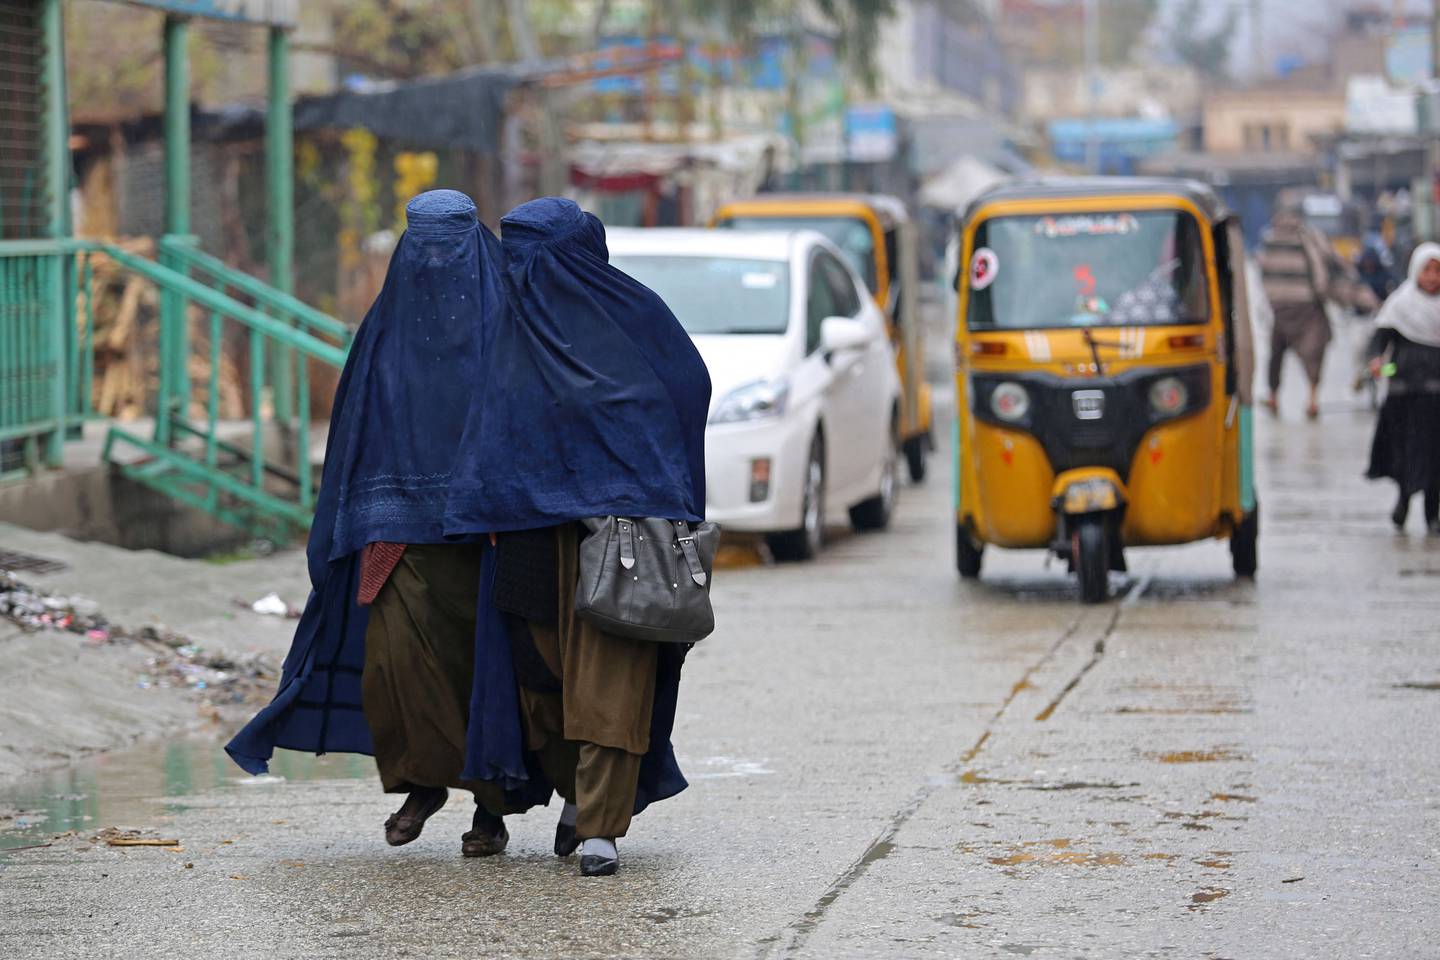 Bildet viser afghanske kvinner i burka. Kvinner har mistet flere rettigheter etter Taliban overtok makta igjen.